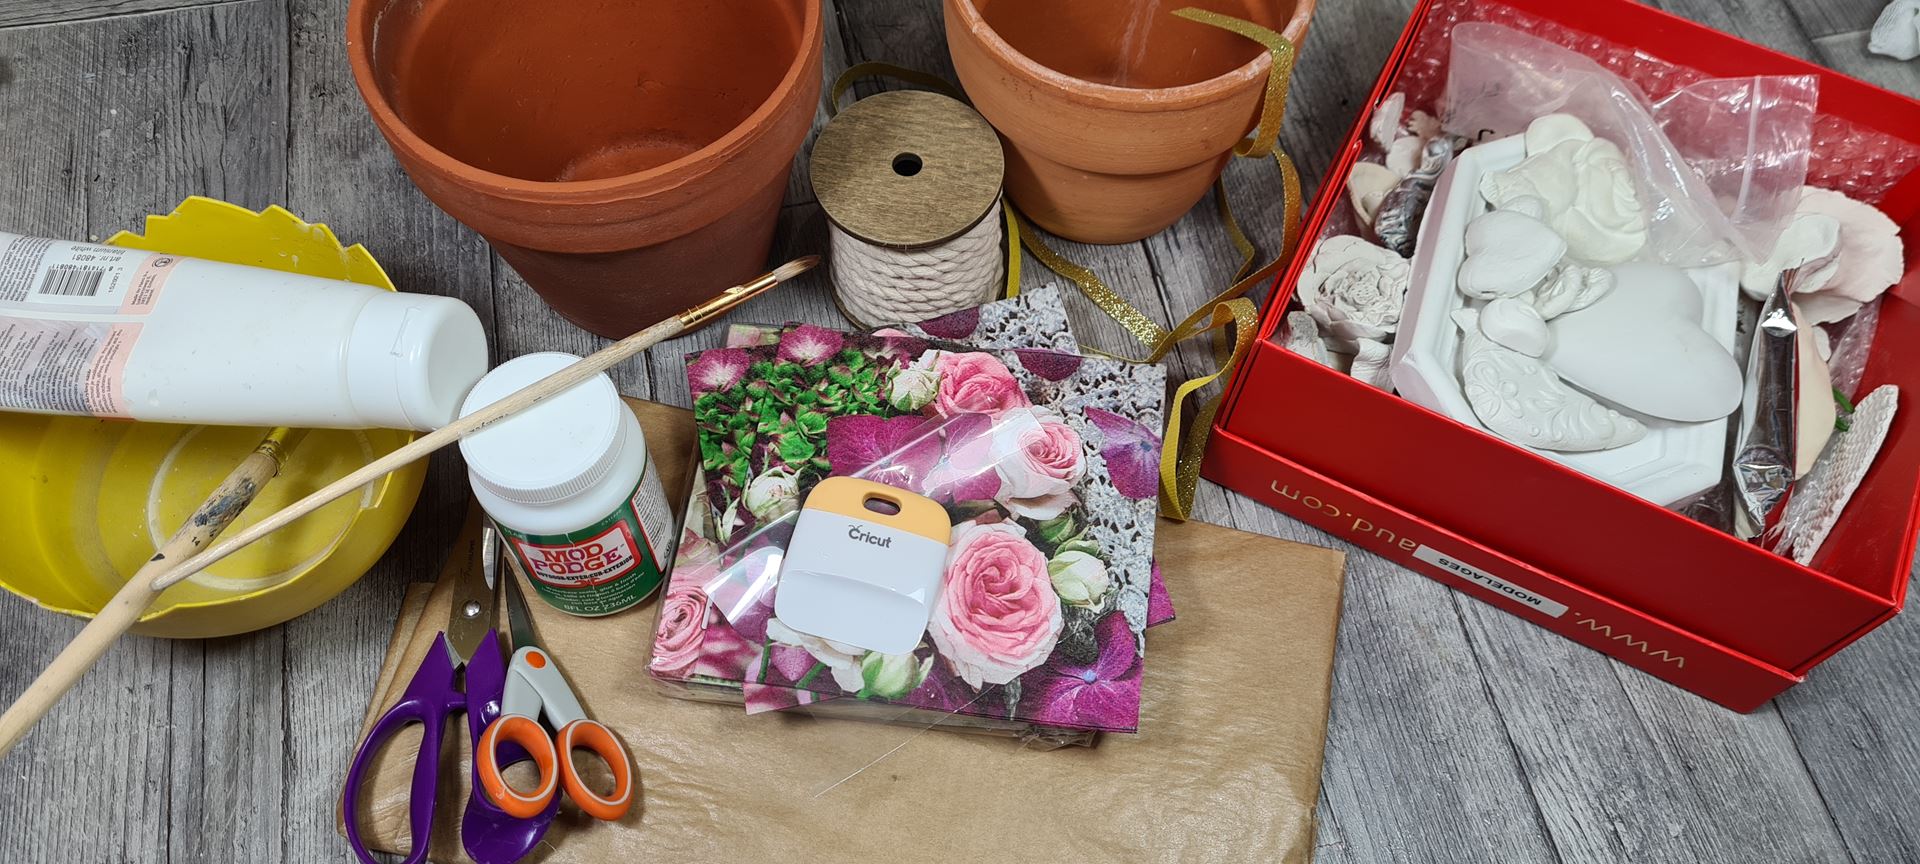 décorer-sespot-de-fleurs-avec-des-serviettes-en-papier-plâtre-peinture-diy-facile-jardin-intérieur